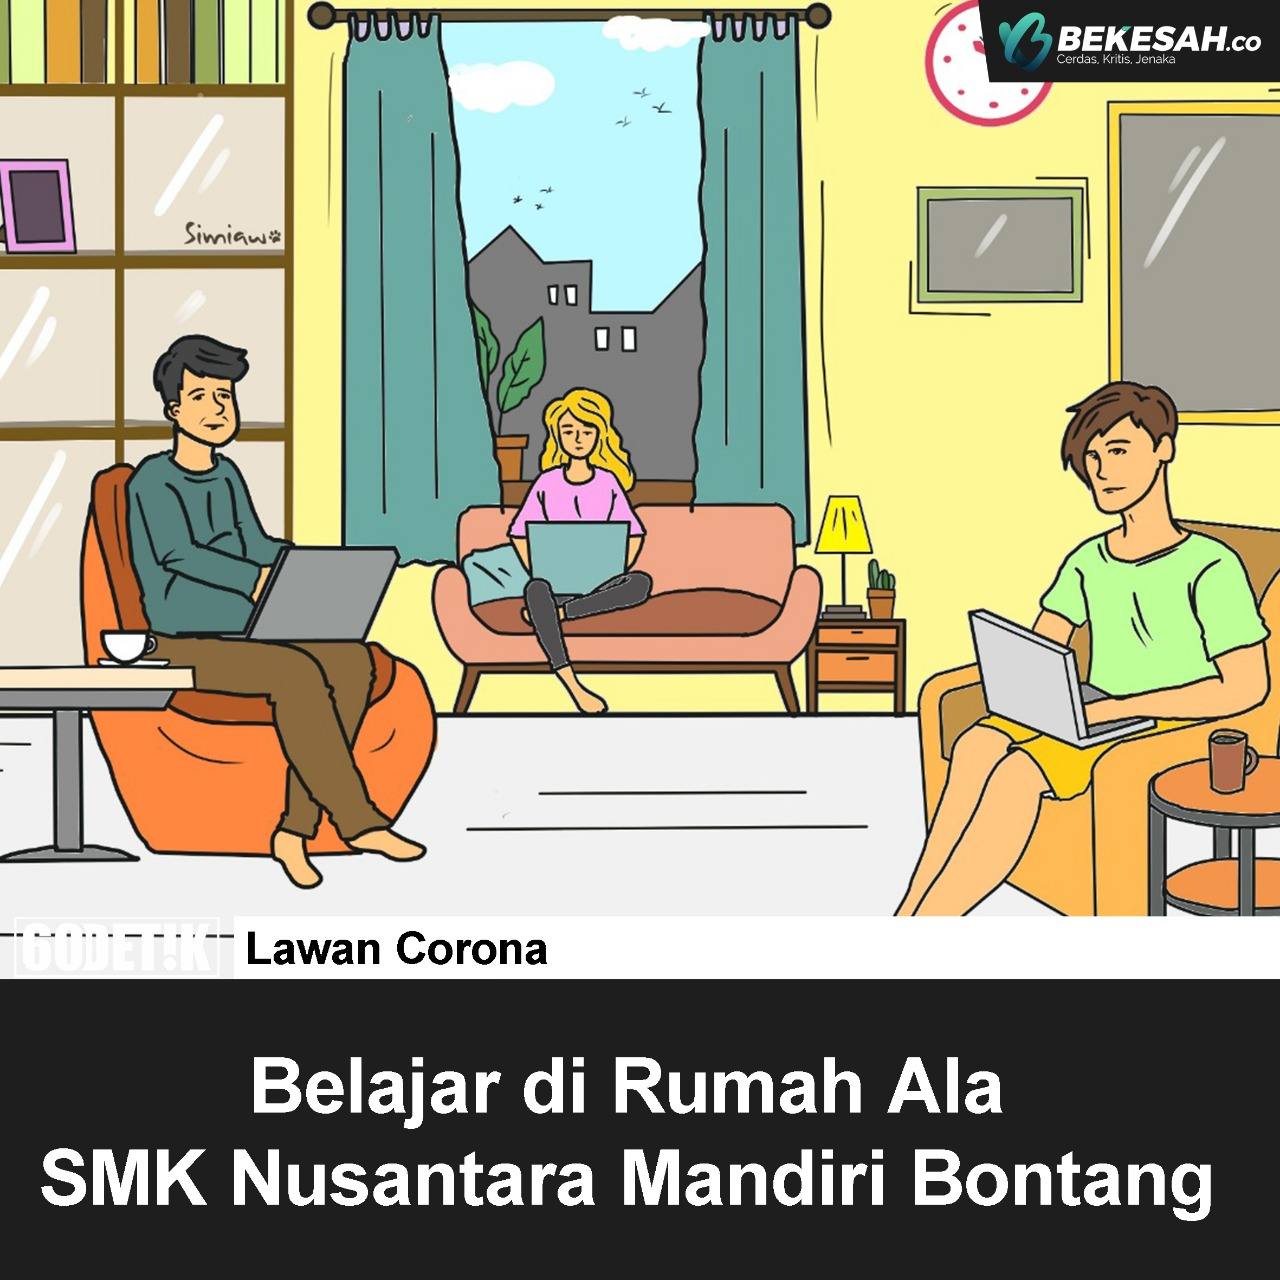 Belajar di Rumah Ala SMK Nusantara Mandiri Bontang